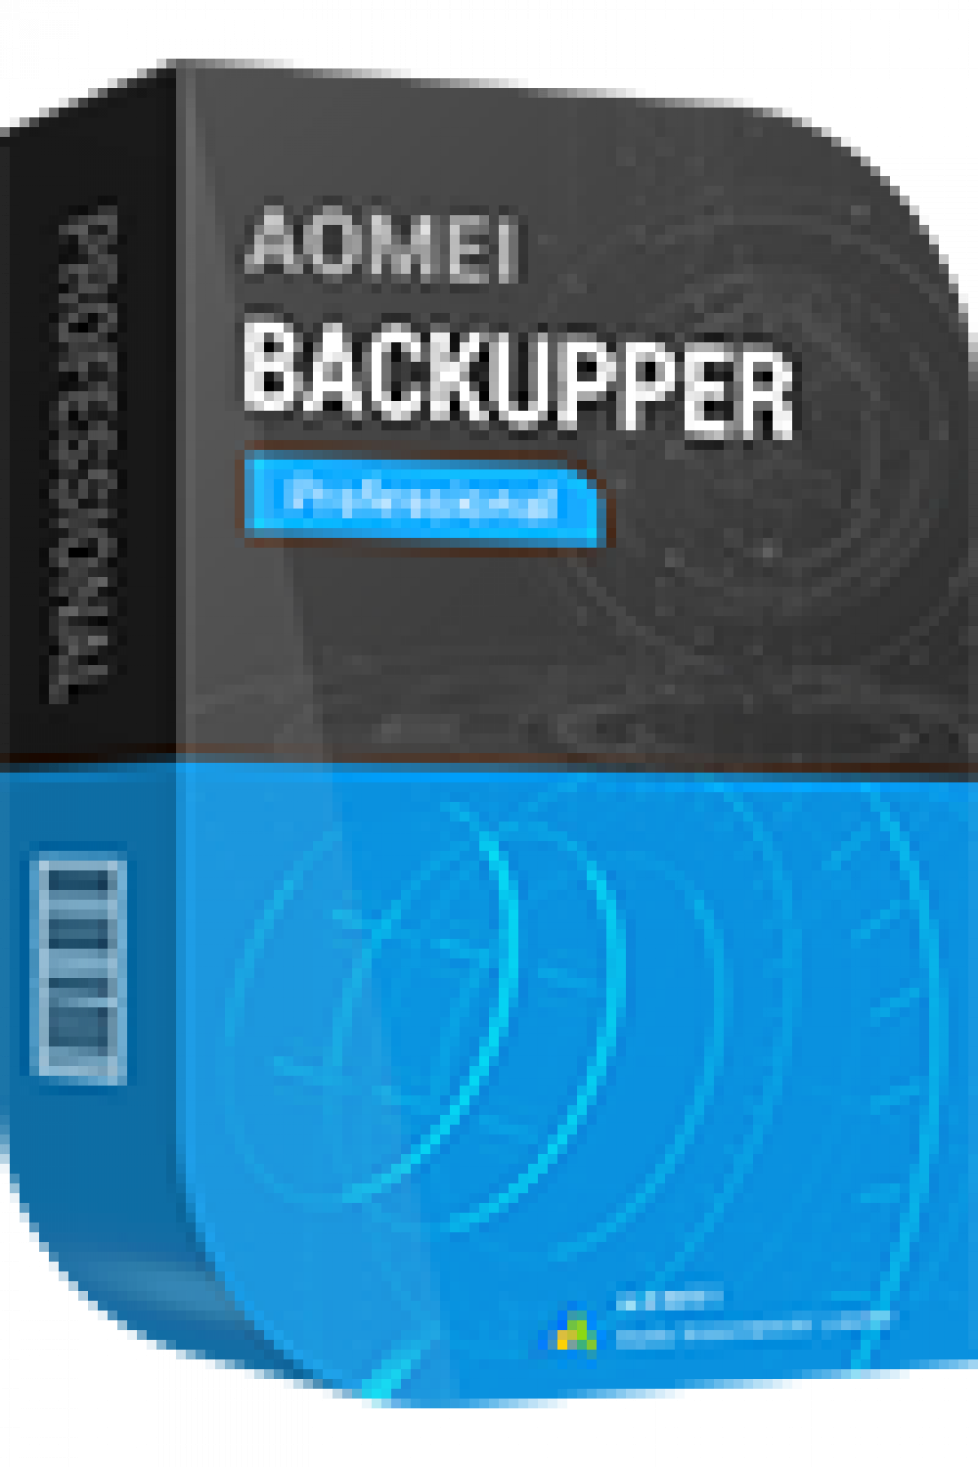 aomei backupper standard download free